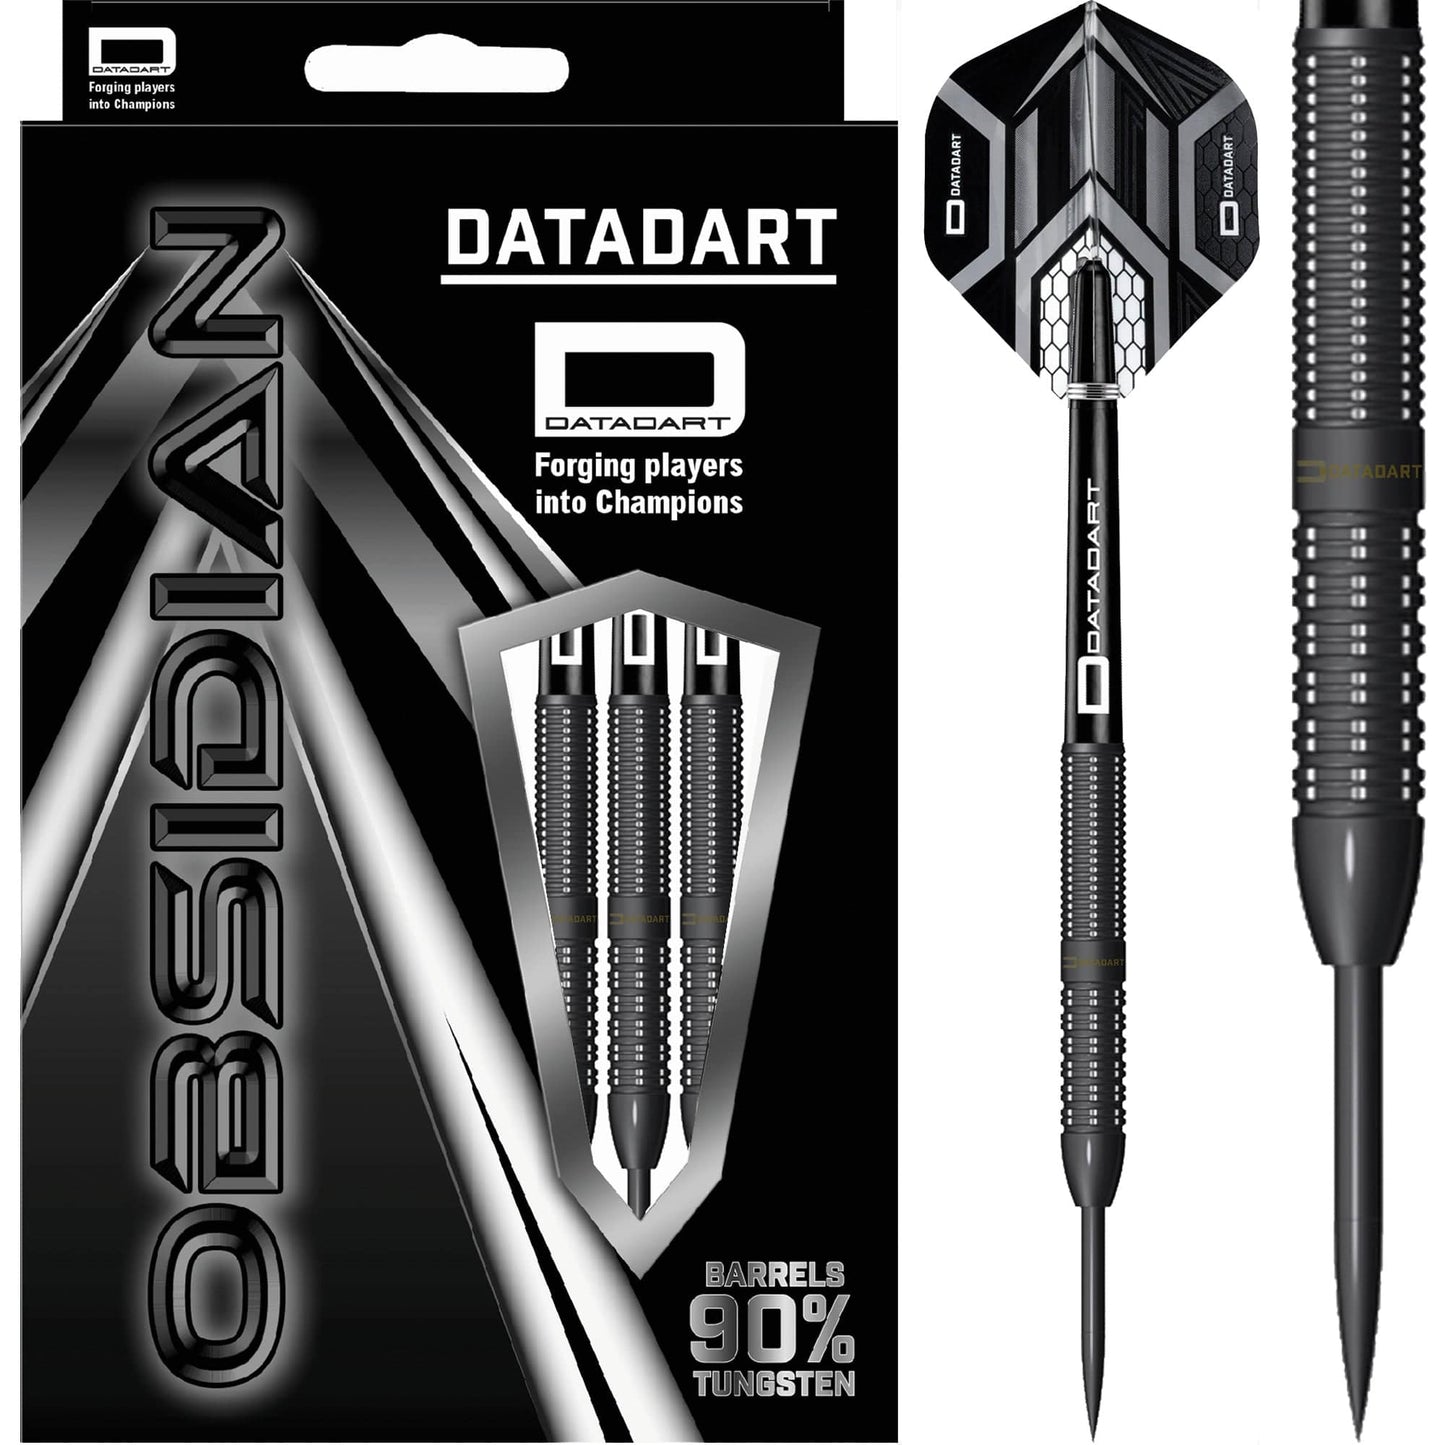 Datadart Black Prism Darts - Steel Tip - Black Titanium